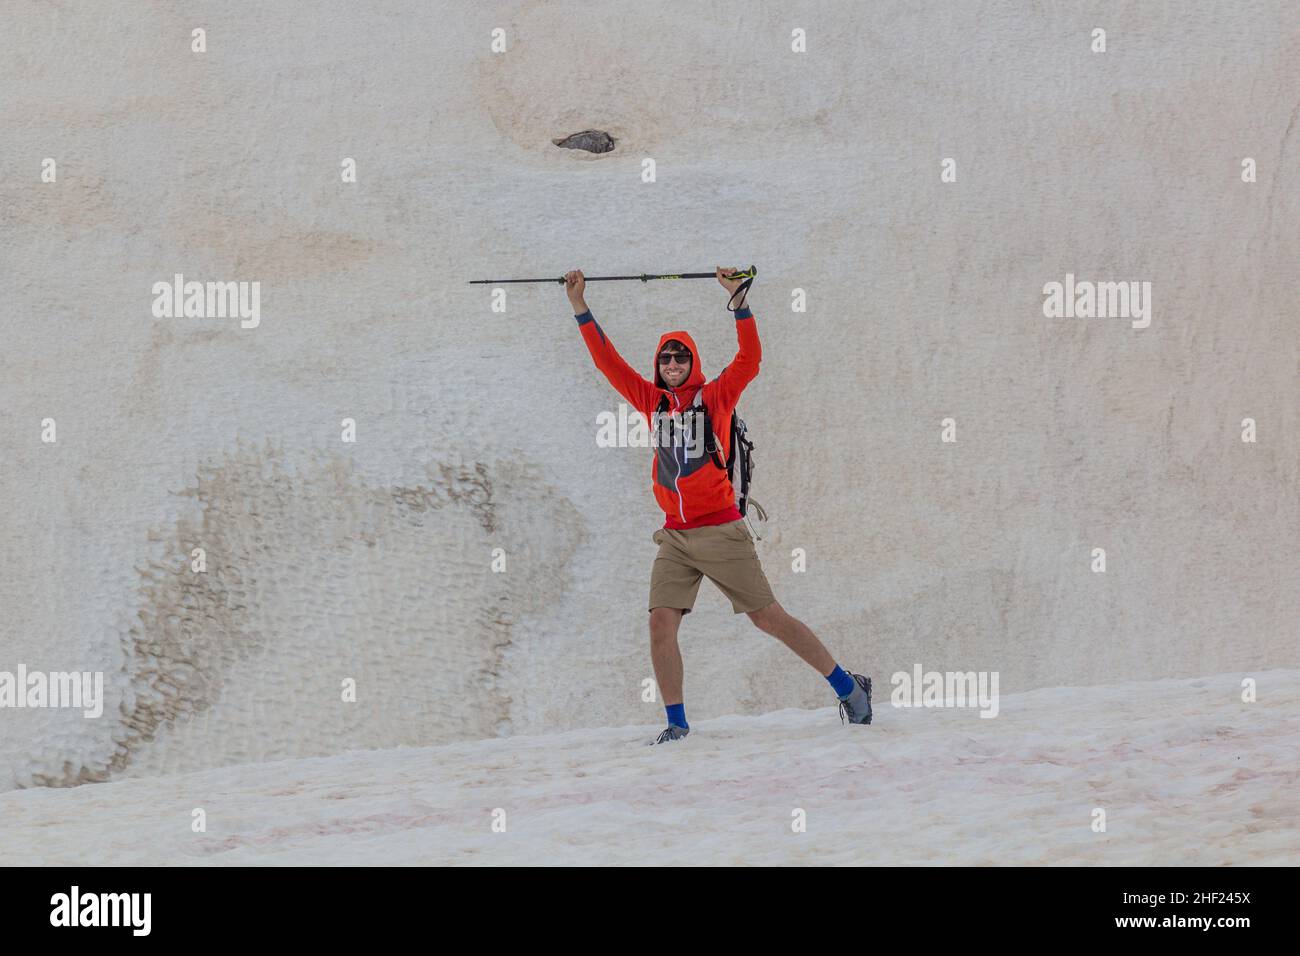 DURMITOR, MONTENEGRO - 6 DE JUNIO de 2019: Excursionista en una zona nevada en el parque nacional de Durmitor, Montenegro. Foto de stock